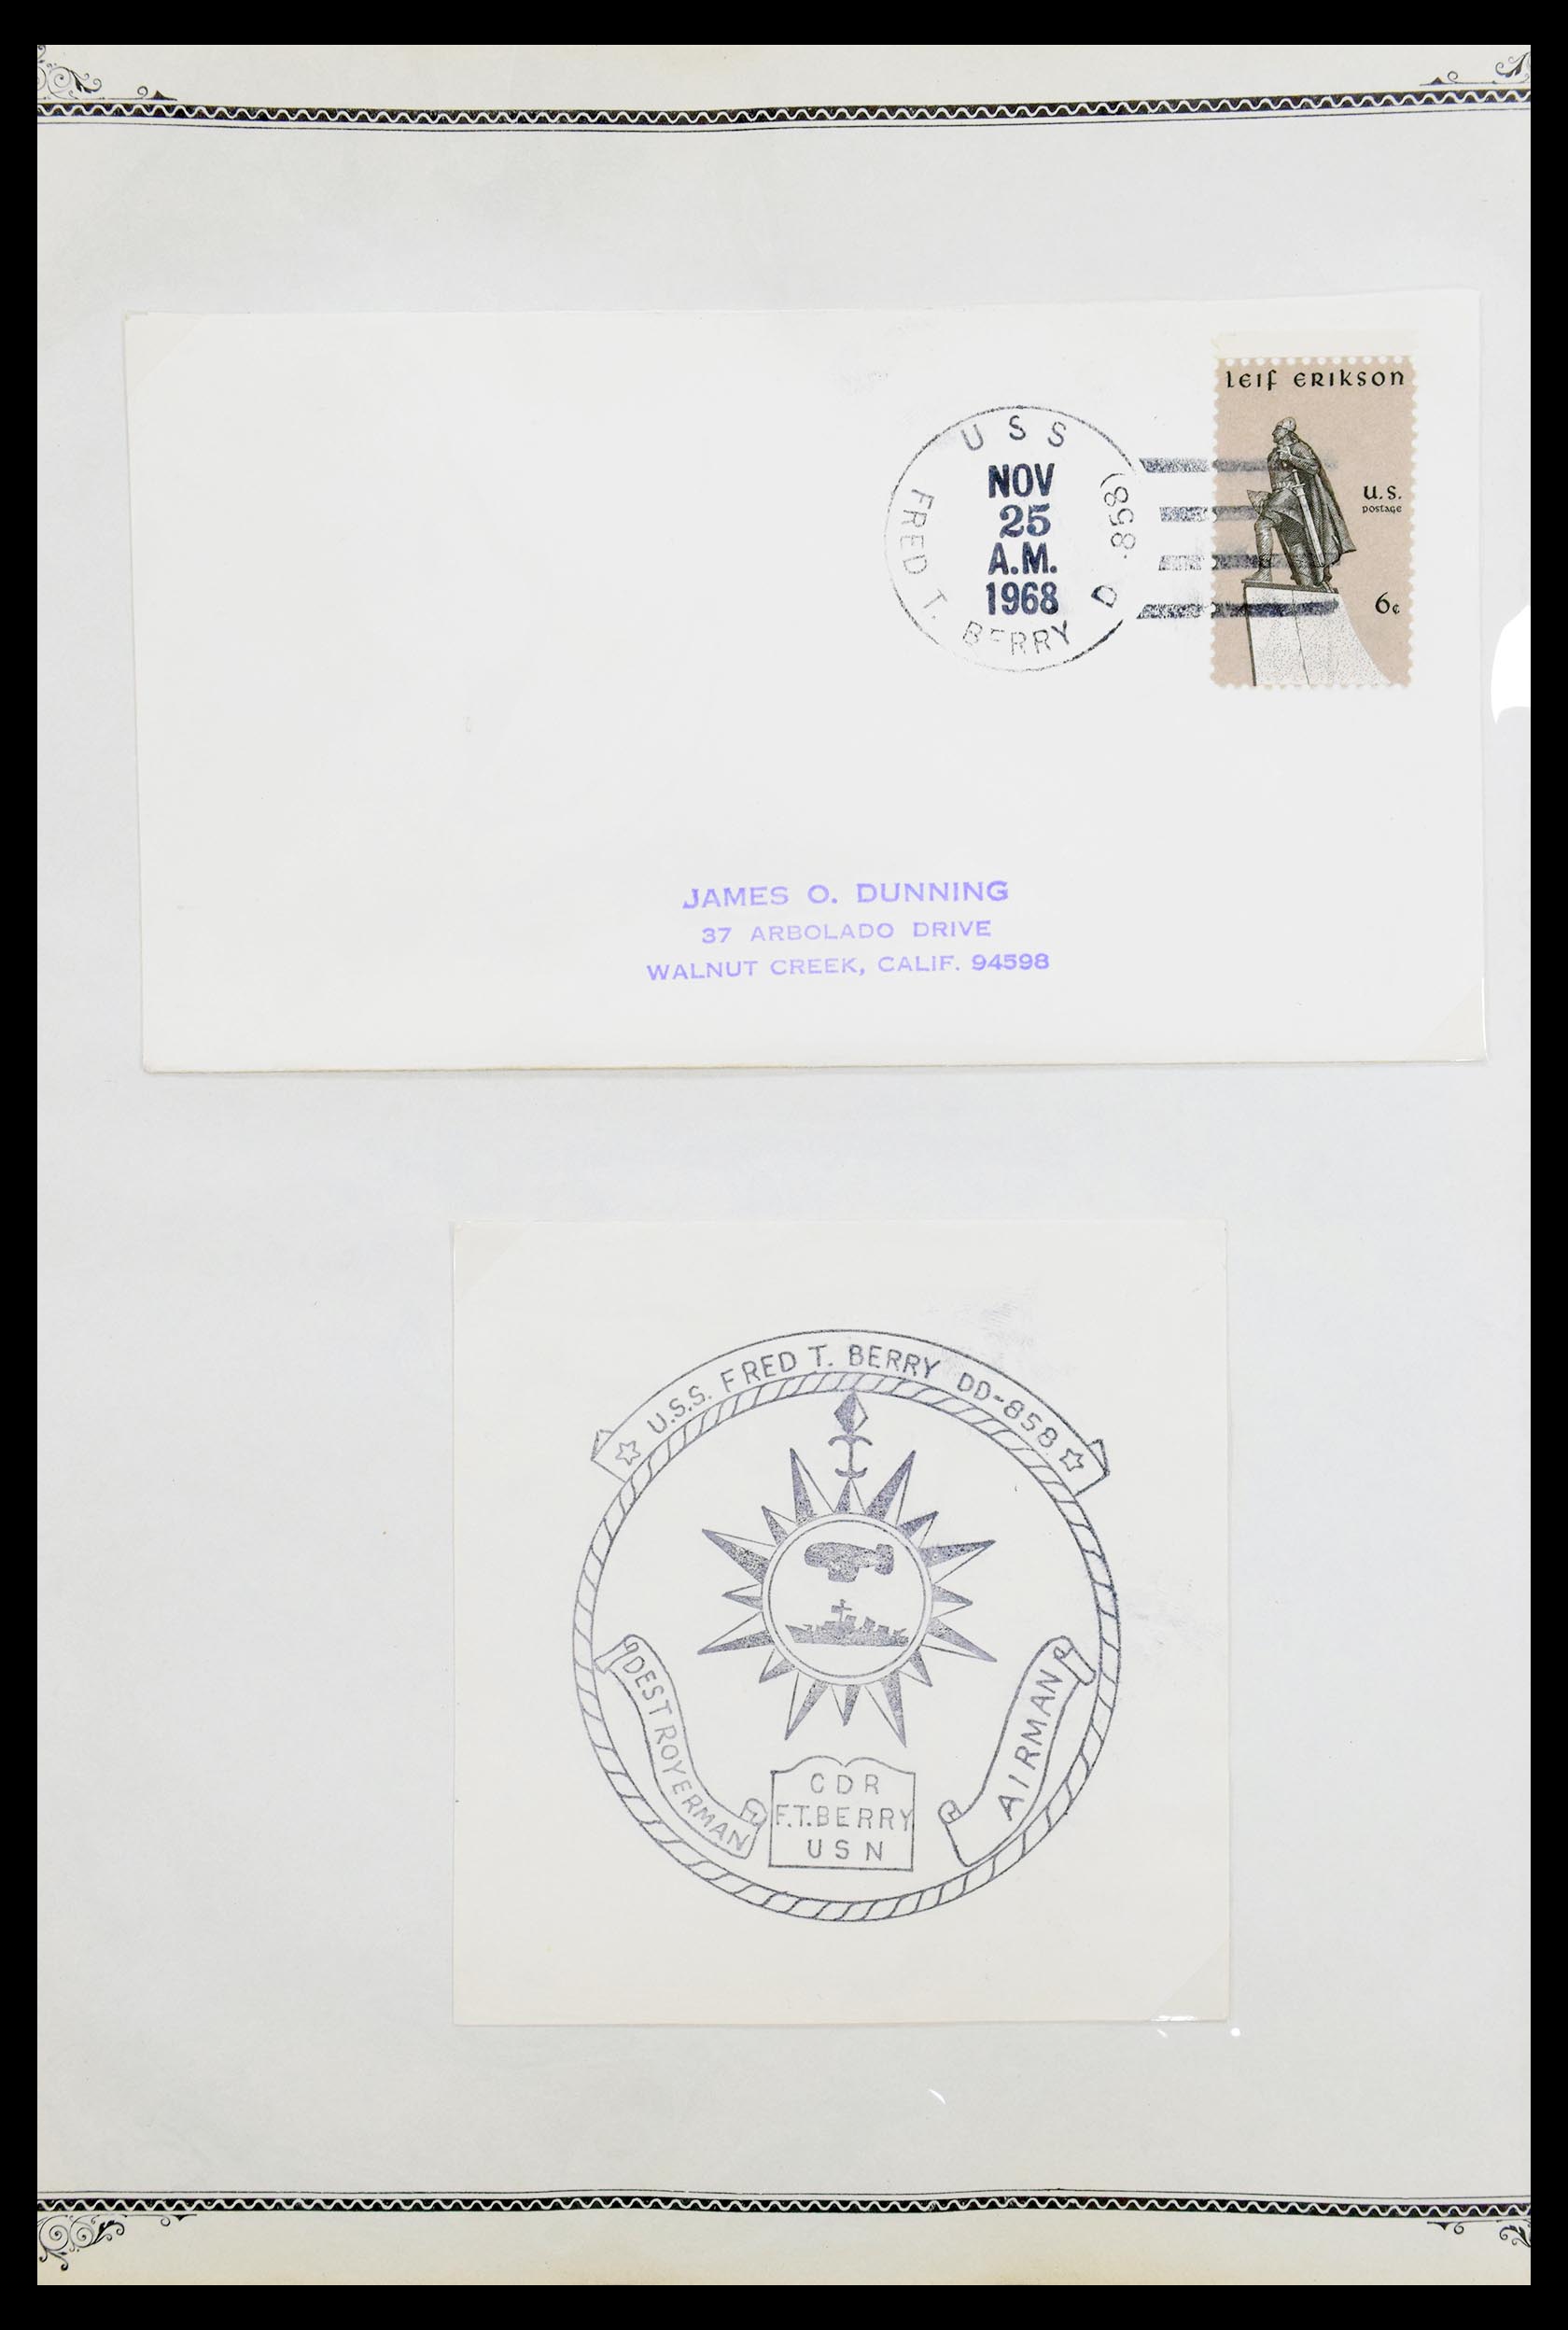 30341 059 - 30341 USA scheepspost brieven 1930-1970.